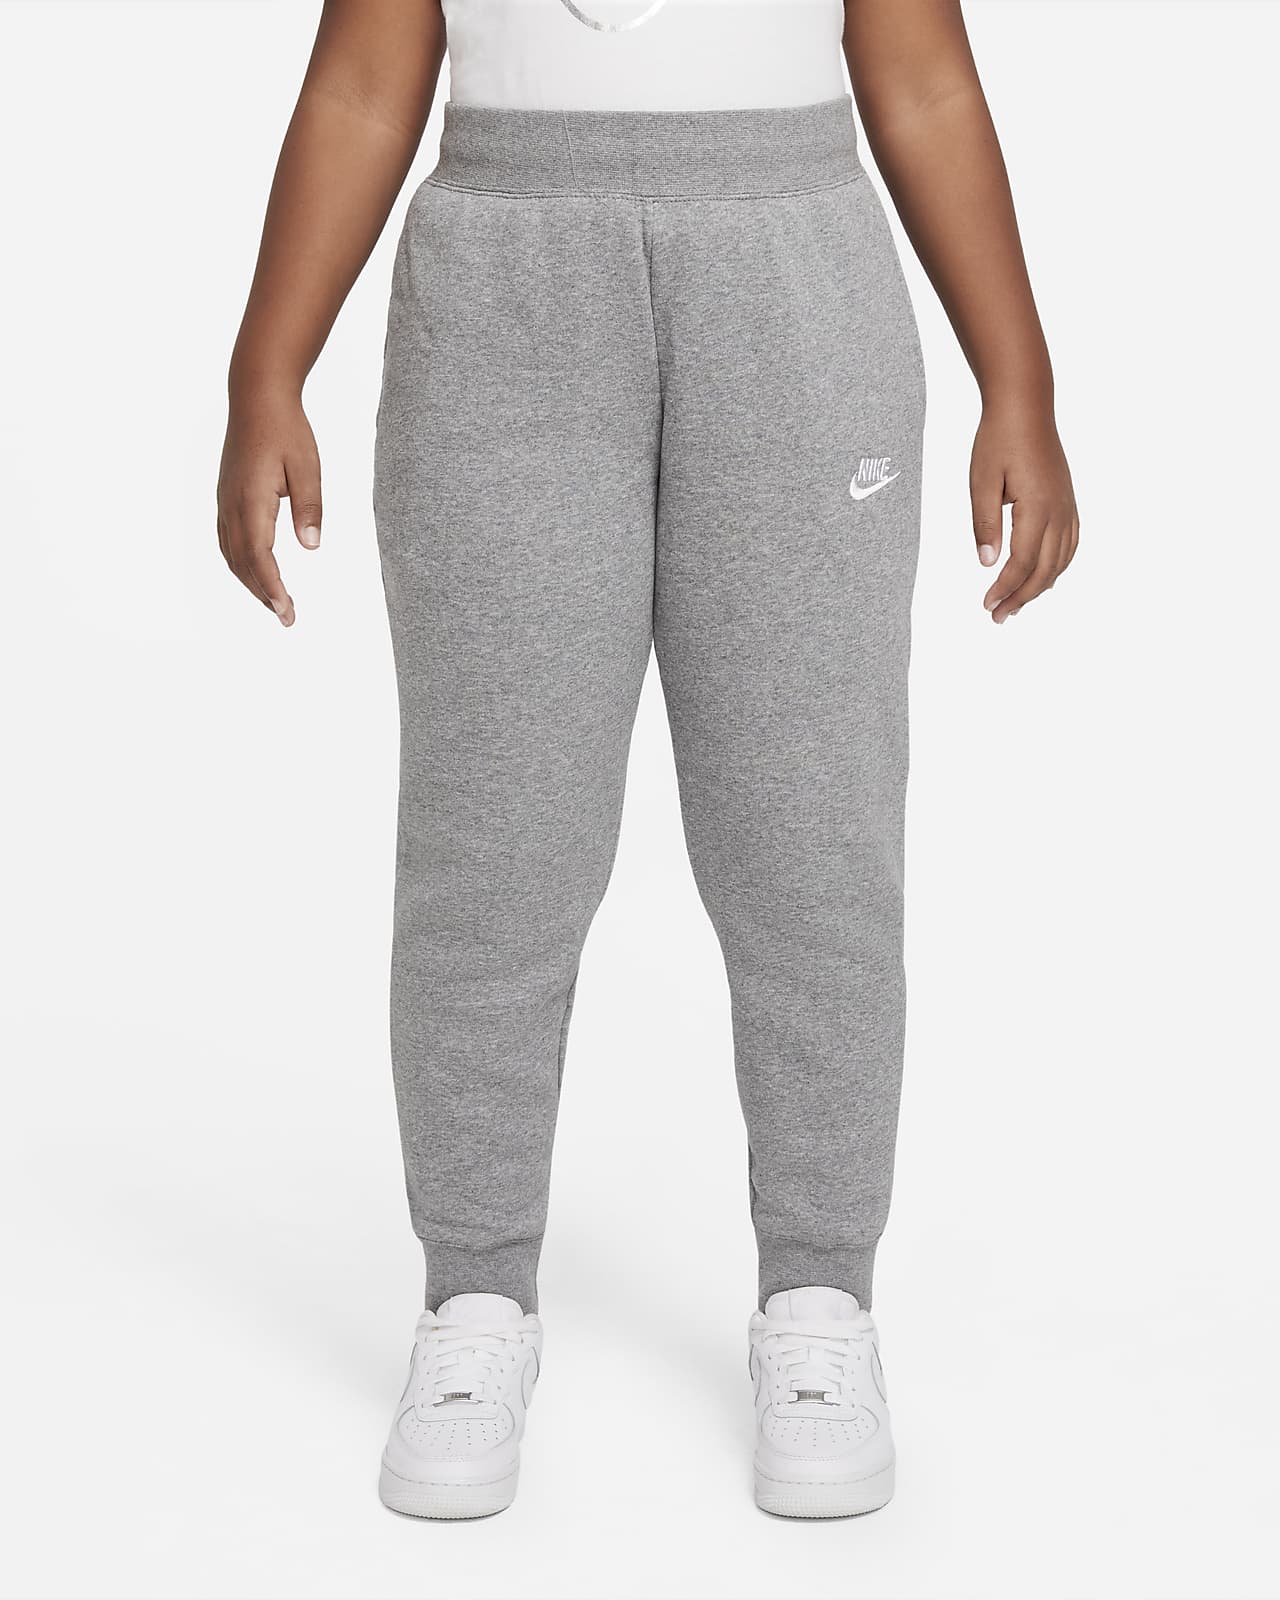 Kalhoty Nike Sportswear Club Fleece pro větší děti (dívky) (rozšířená velikost)